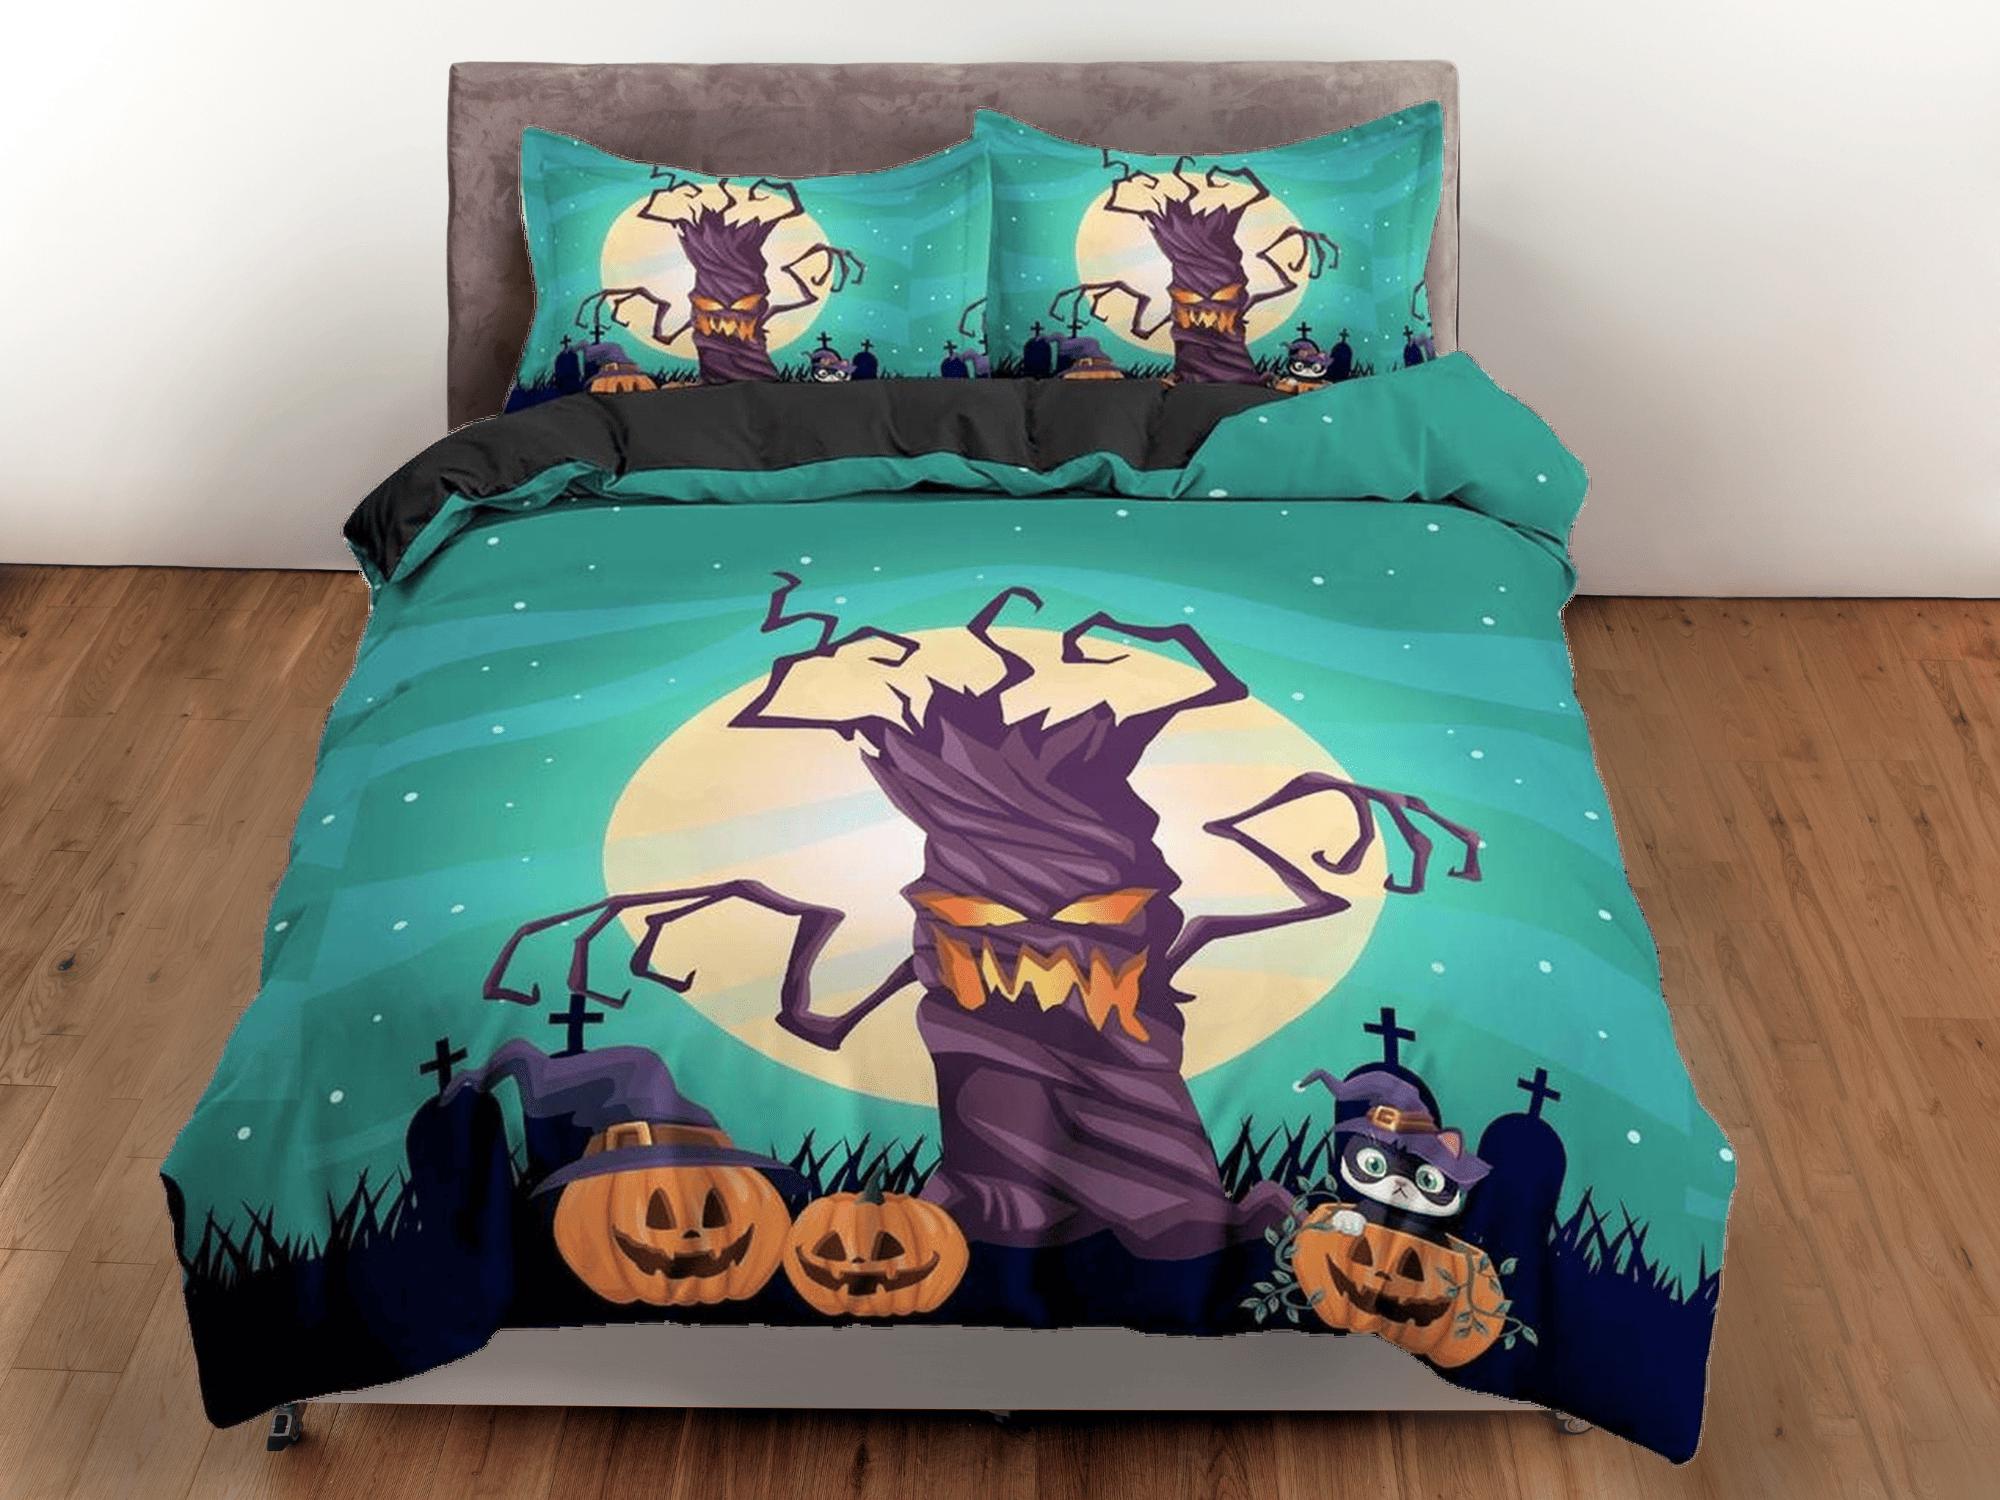 daintyduvet Full moon spooky tree and pumpkin halloween full bedding & pillowcase, duvet cover set dorm bedding, nursery toddler bedding, halloween gift